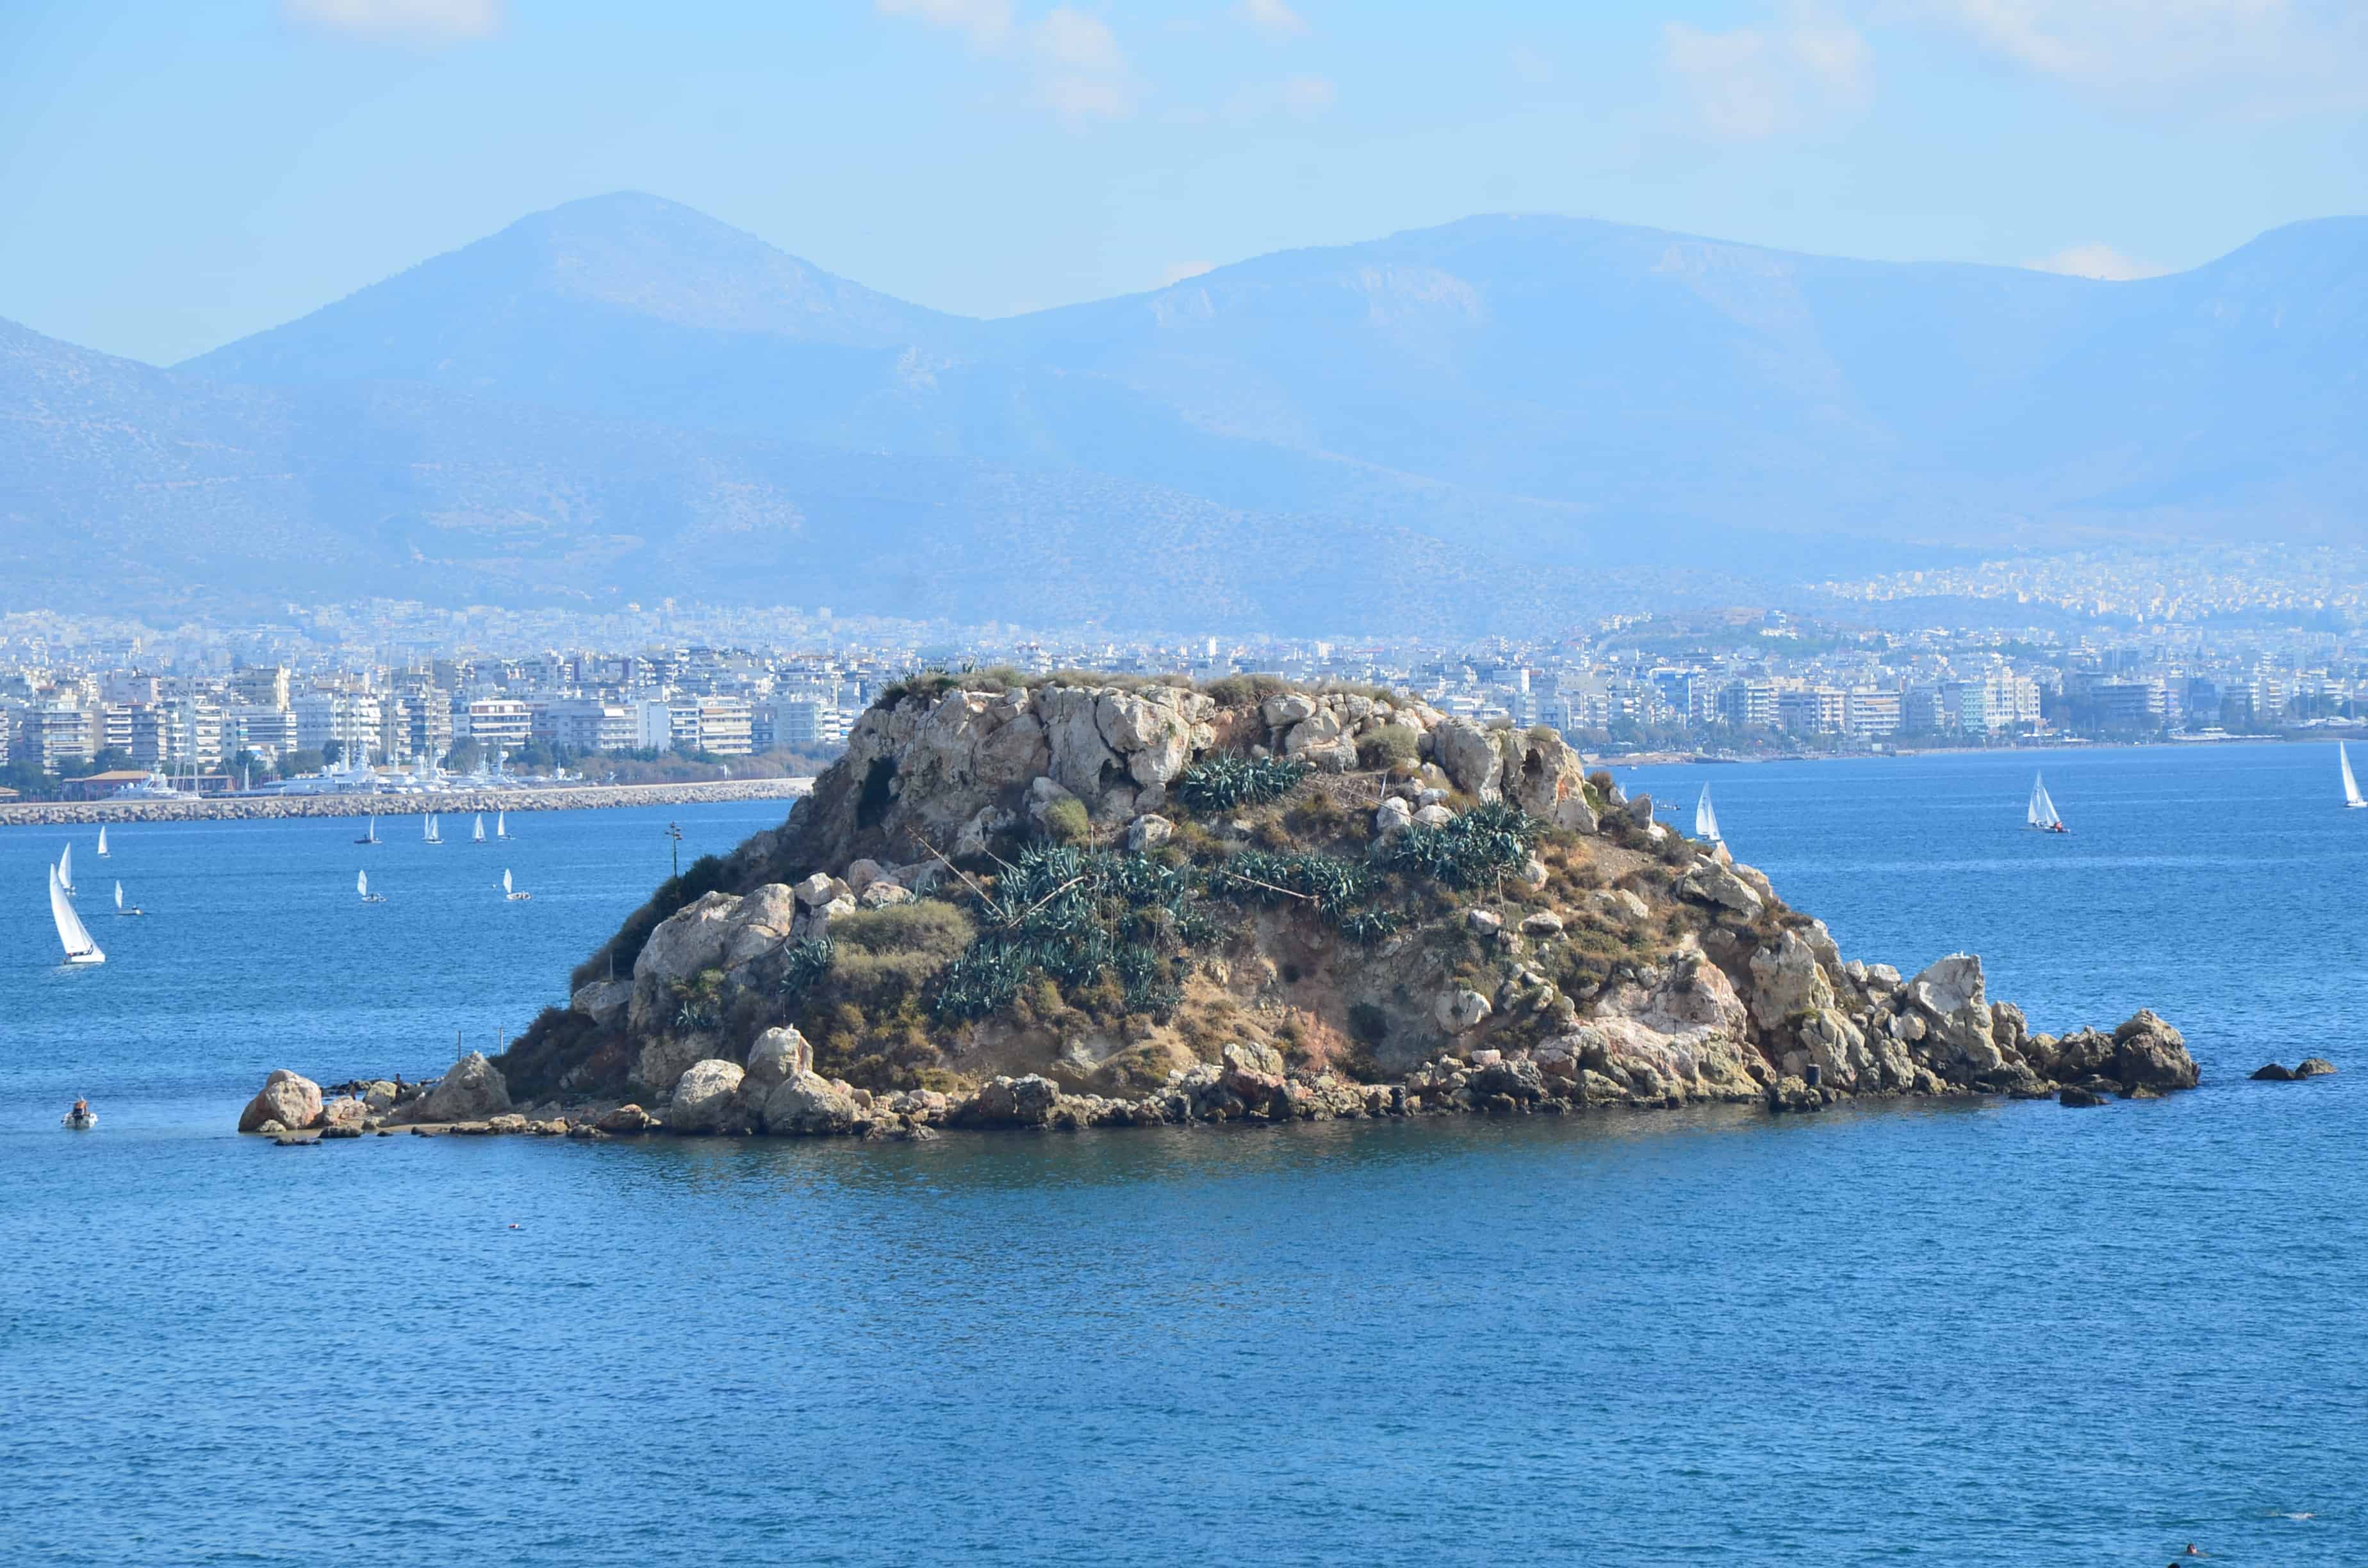 Koumoundourou in Piraeus, Greece